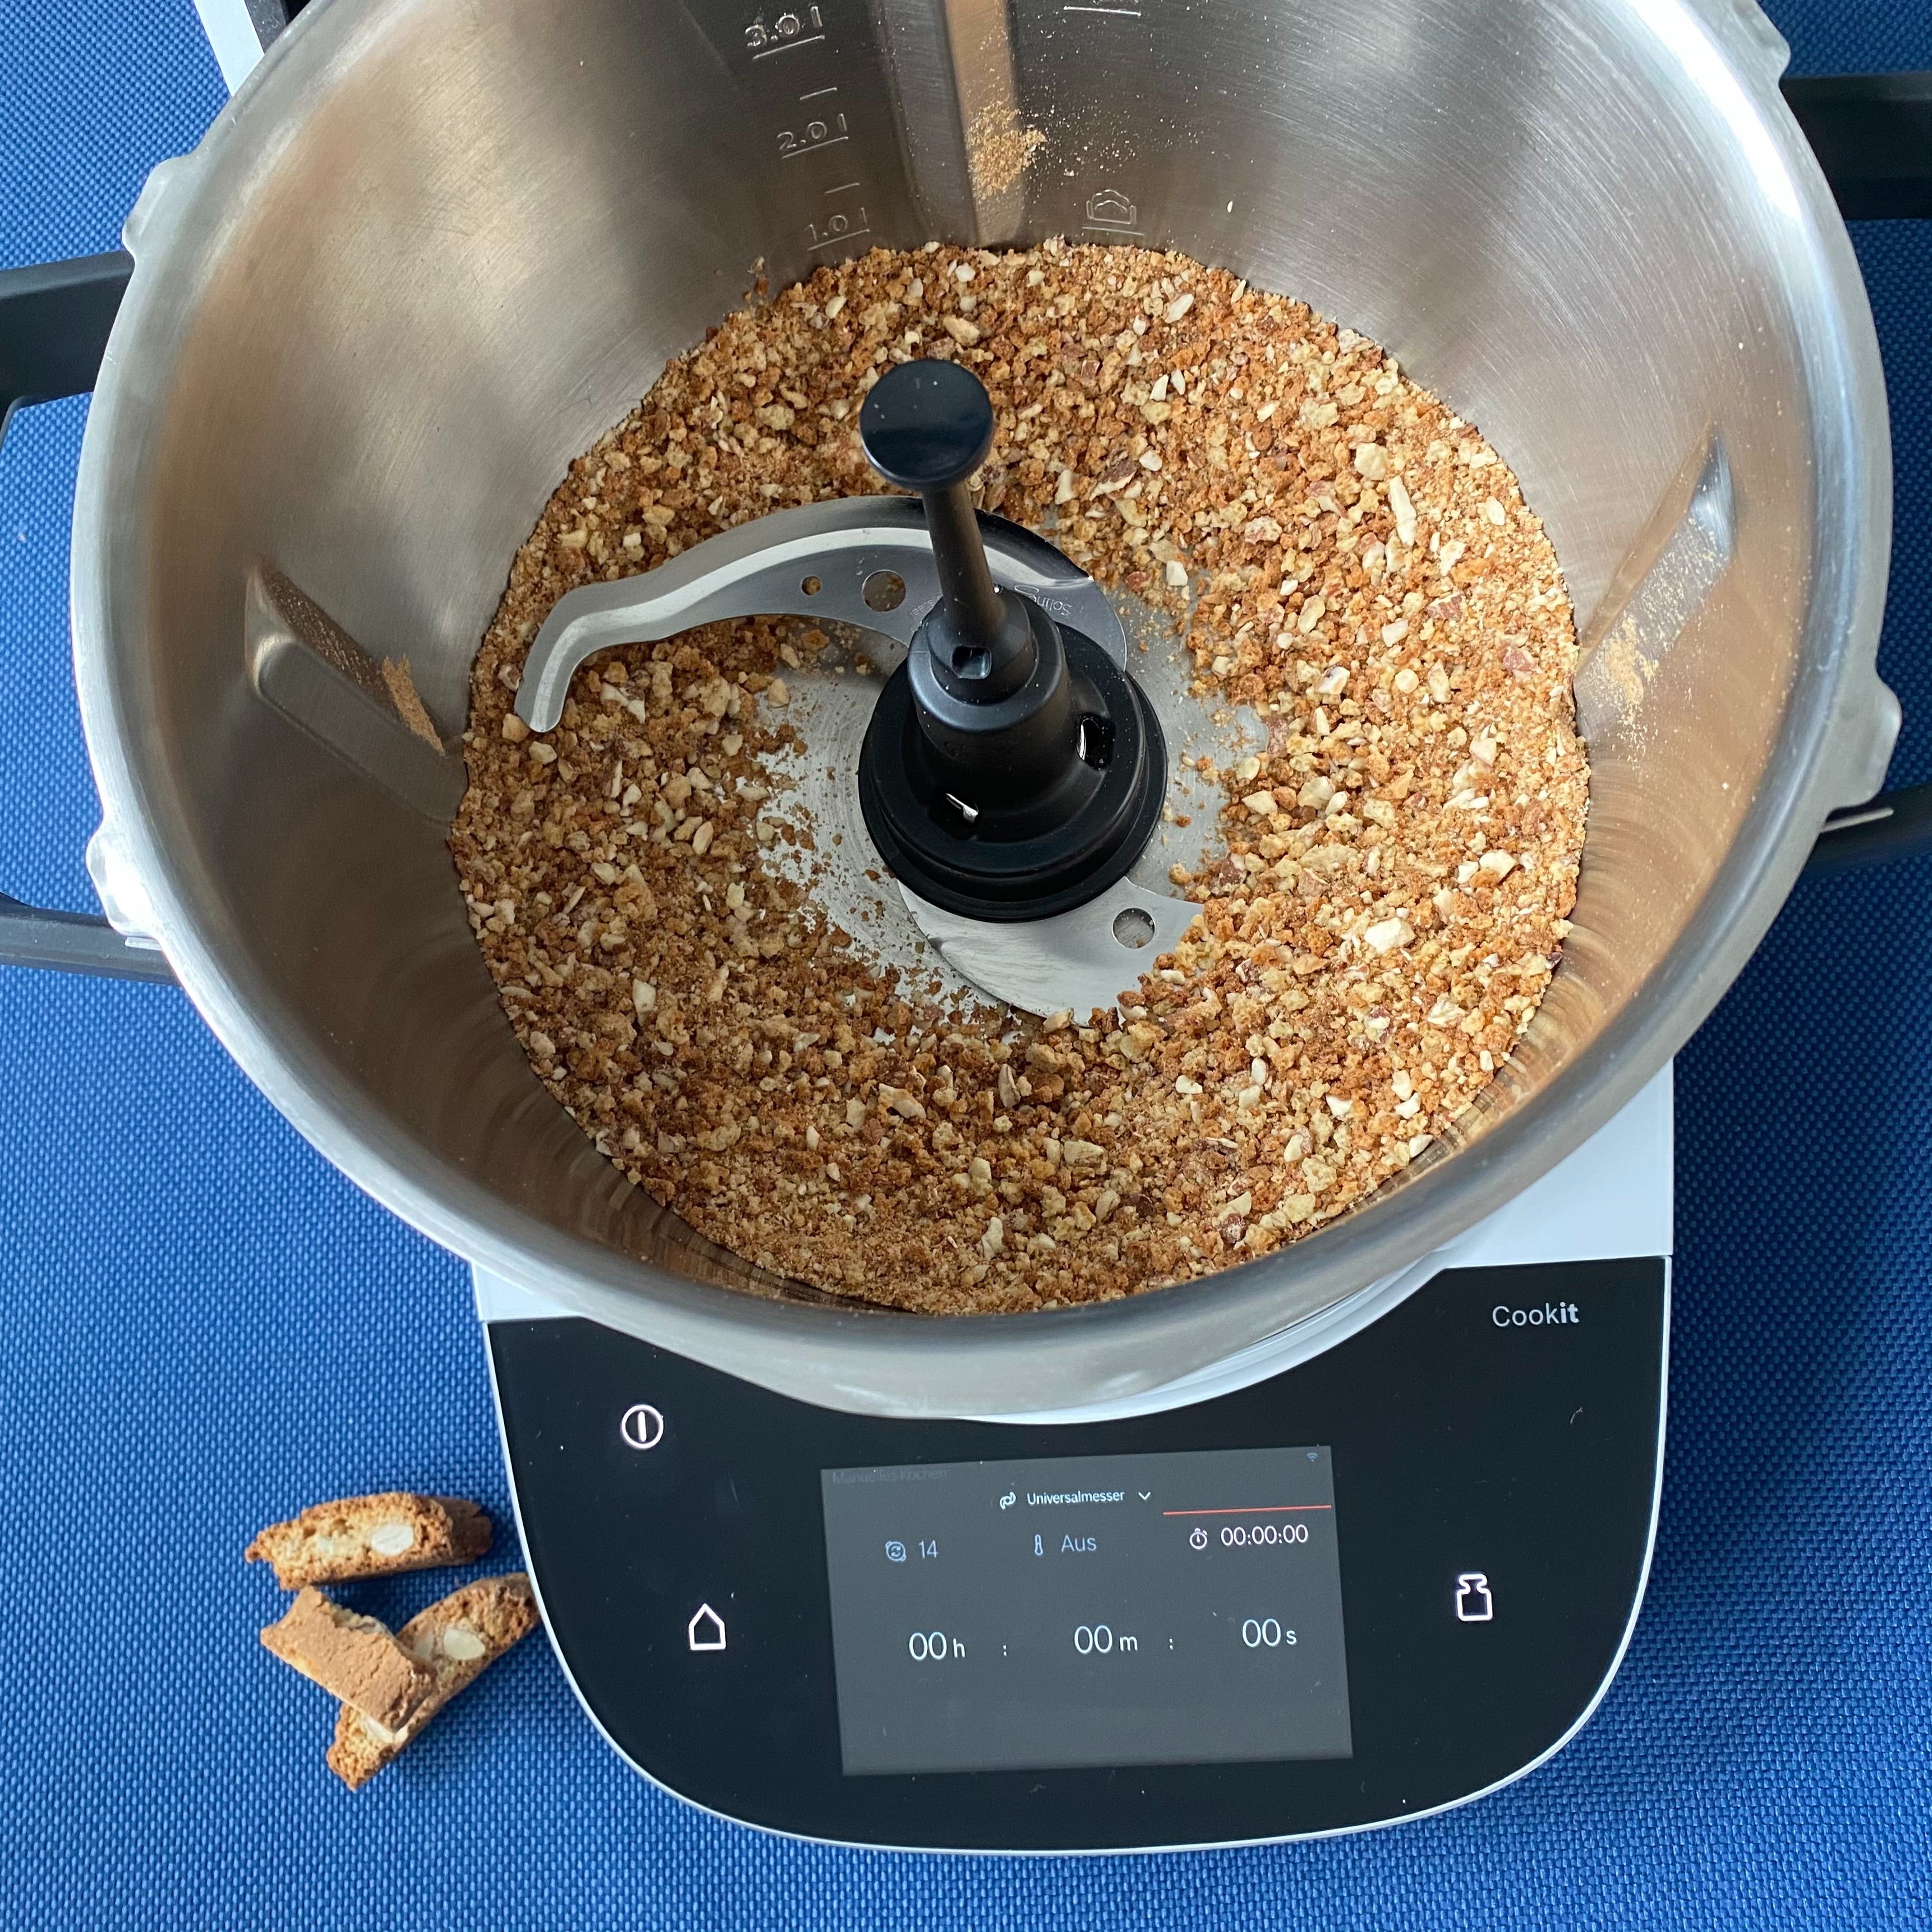 Das Cookit Universalmesser einsetzen und die Cantuccini in den Topf geben und bei geschlossenem Deckel und eingesetztem Messbecher zerkleinern (Universalmesser | Stufe 14 | 20 Sekunden). Das Universalmesser entnehmen und die Kekskrümel umfüllen.